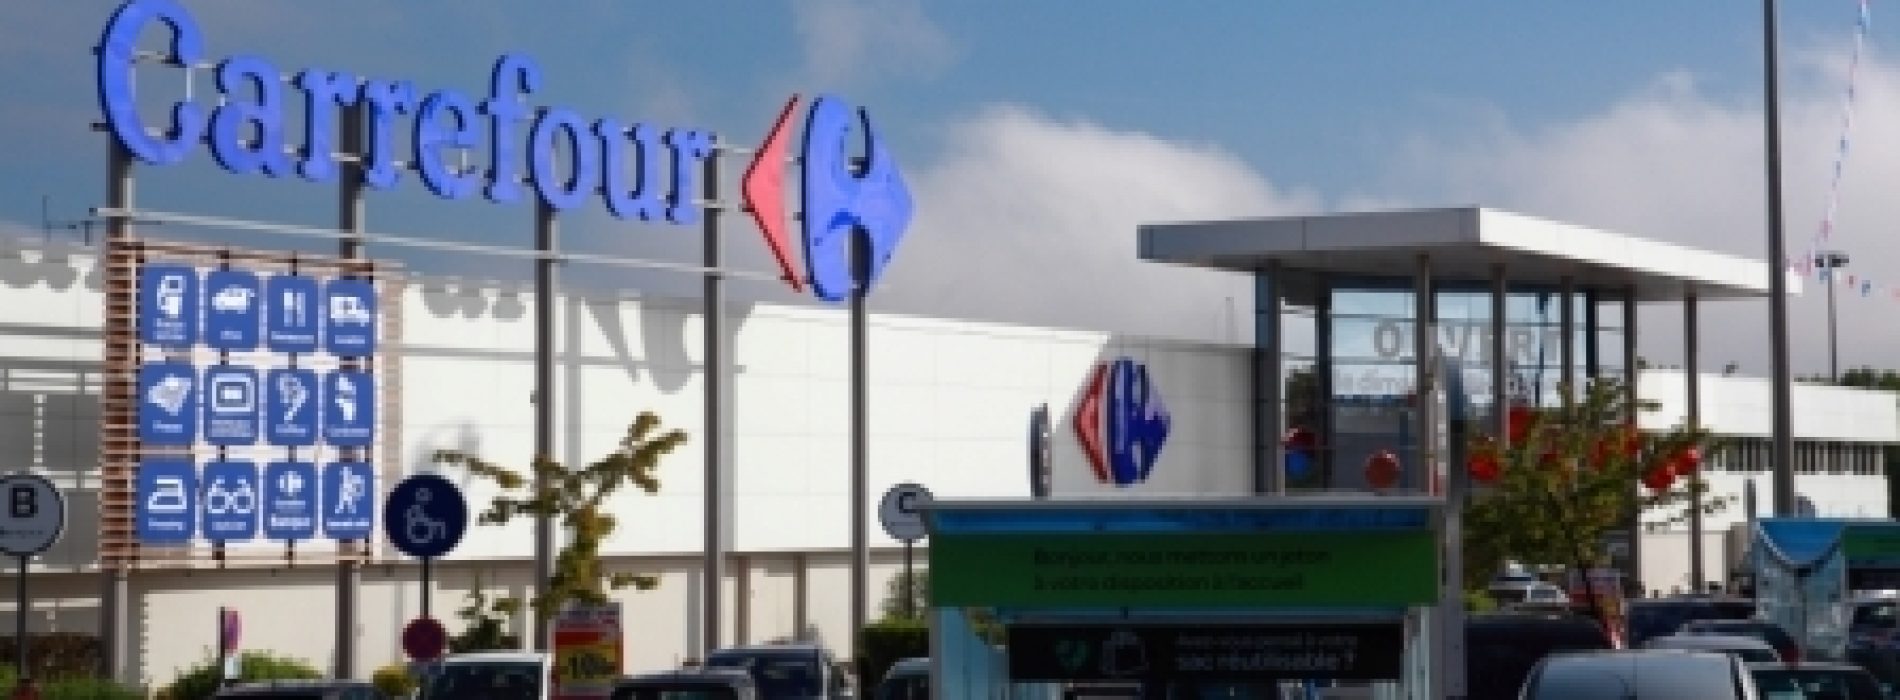 Carrefour reduz marcas de fabricante em quatro lojas francesas